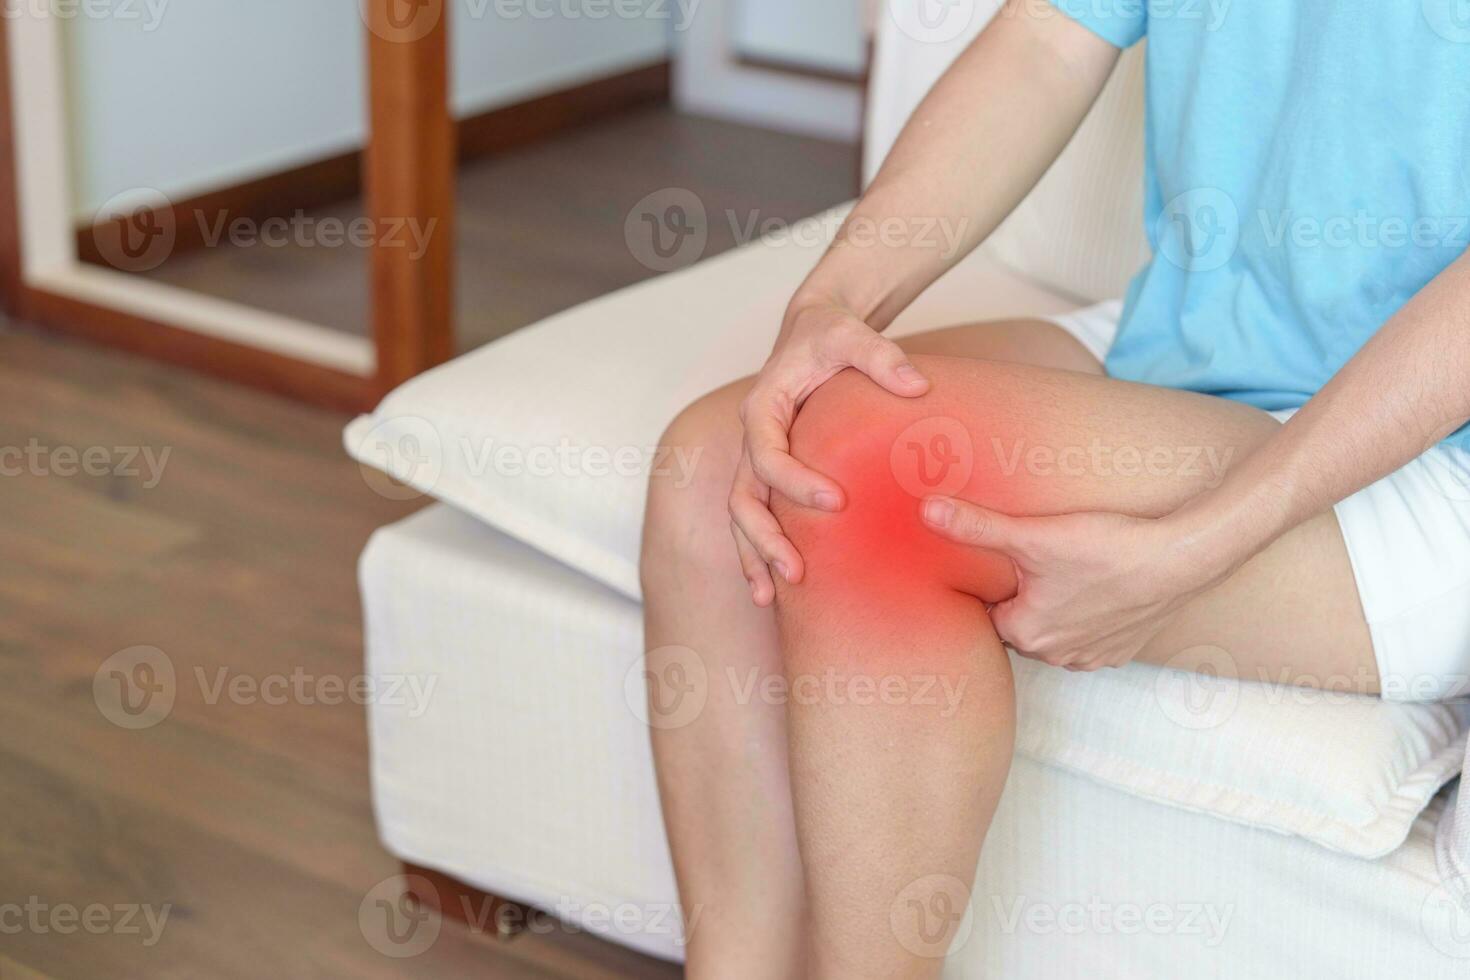 vrouw hebben knie pijn en spier pijn ten gevolge naar hardlopers knie of patellofemoraal pijn syndroom, artrose, artritis, reuma en knieschijf tendinitis. medisch concept foto